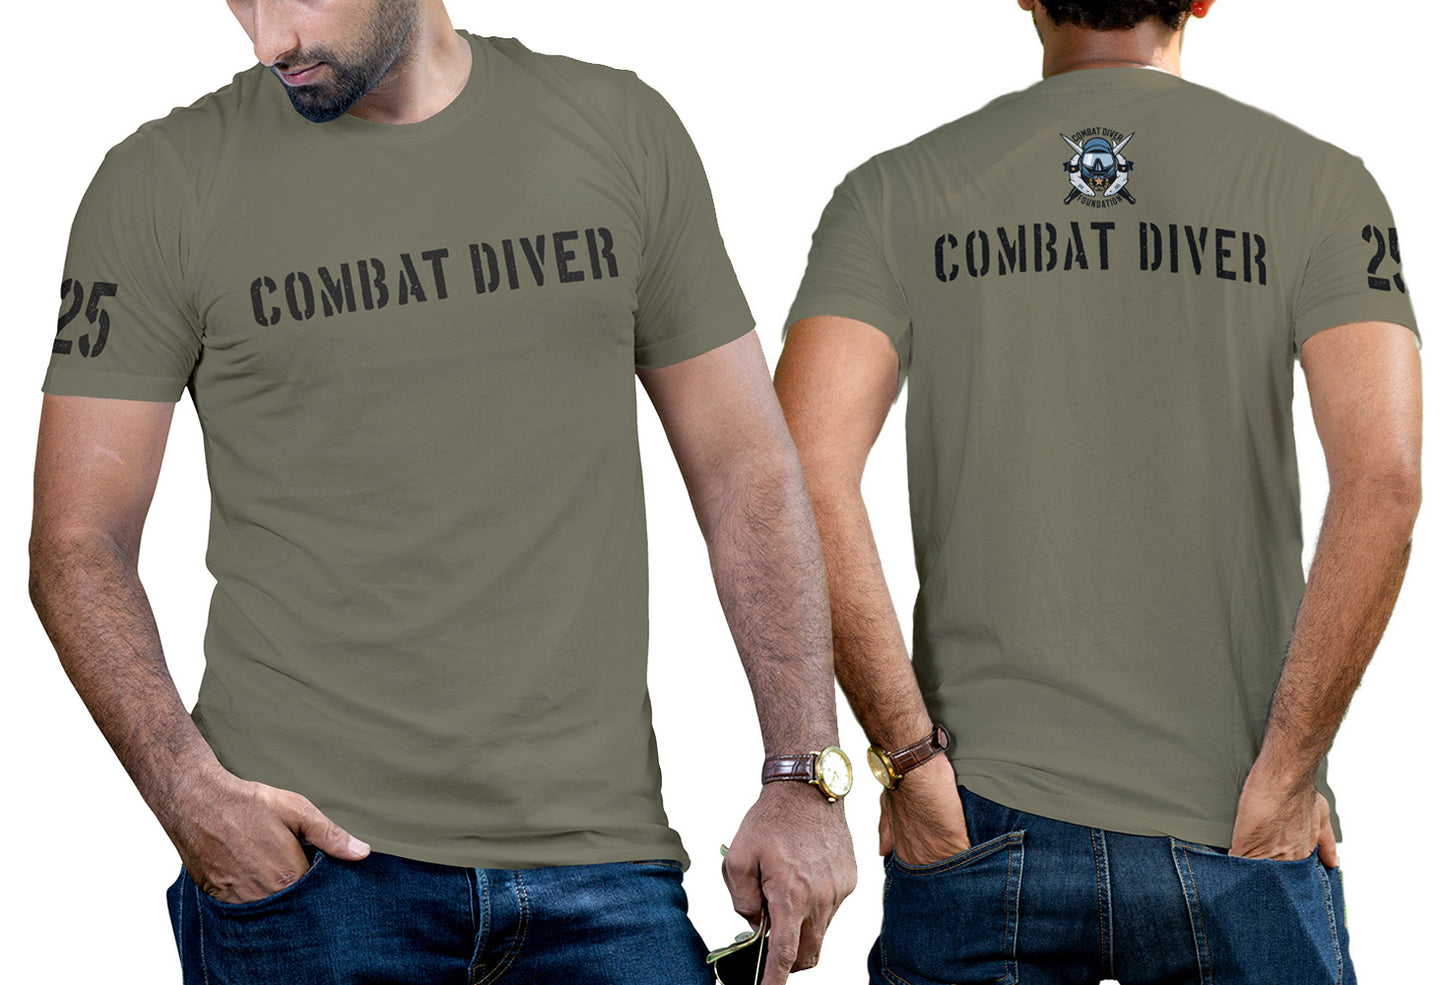 The "CDQC" Replica Shirt